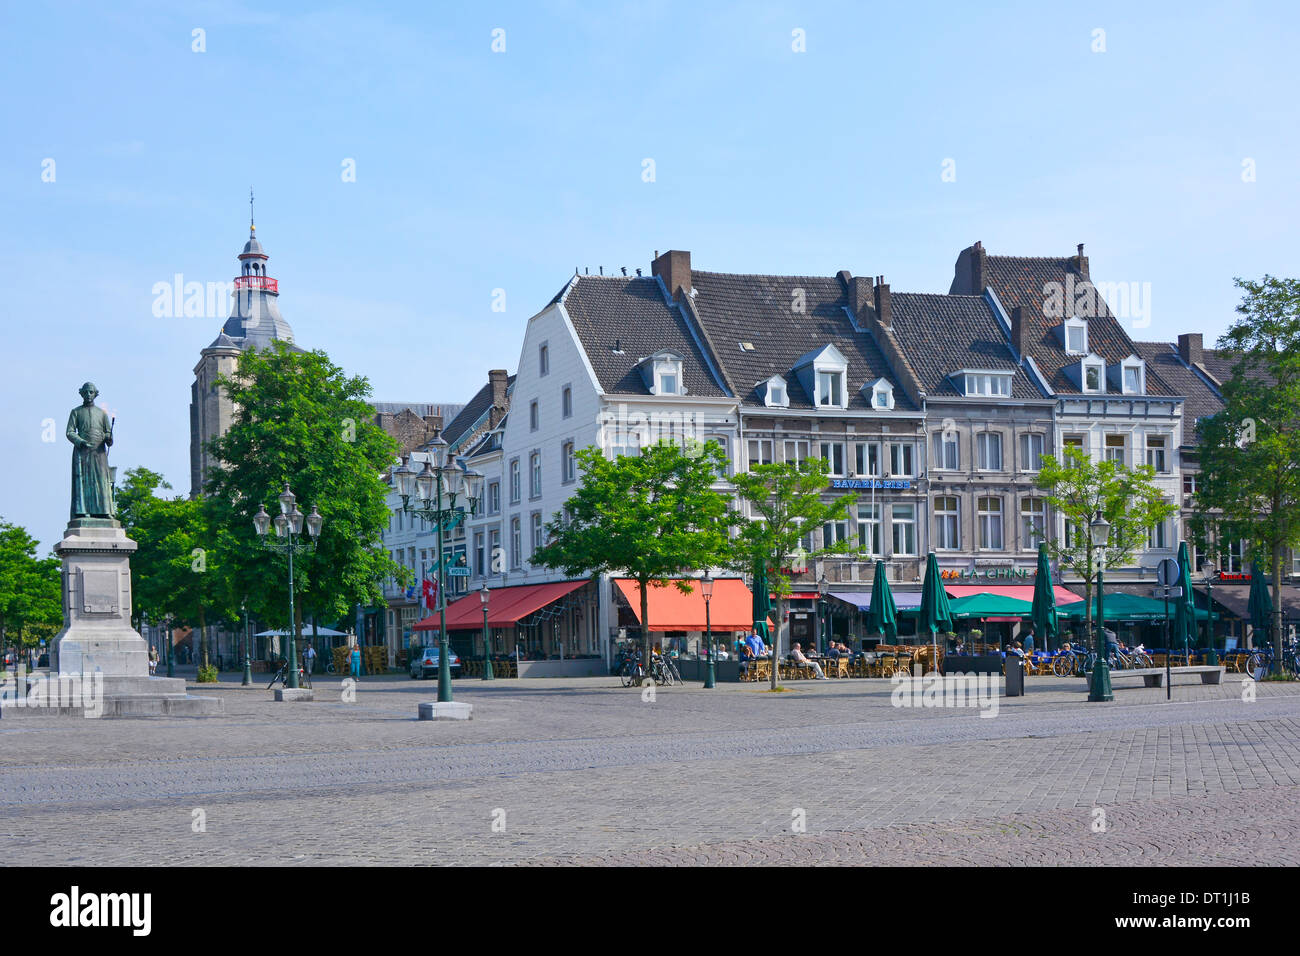 Piazza del mercato di Maastricht paesaggio urbano inizio estate domenica mattina sole con poche persone nei caffè all'aperto in Limburgo Paesi Bassi Europa Foto Stock